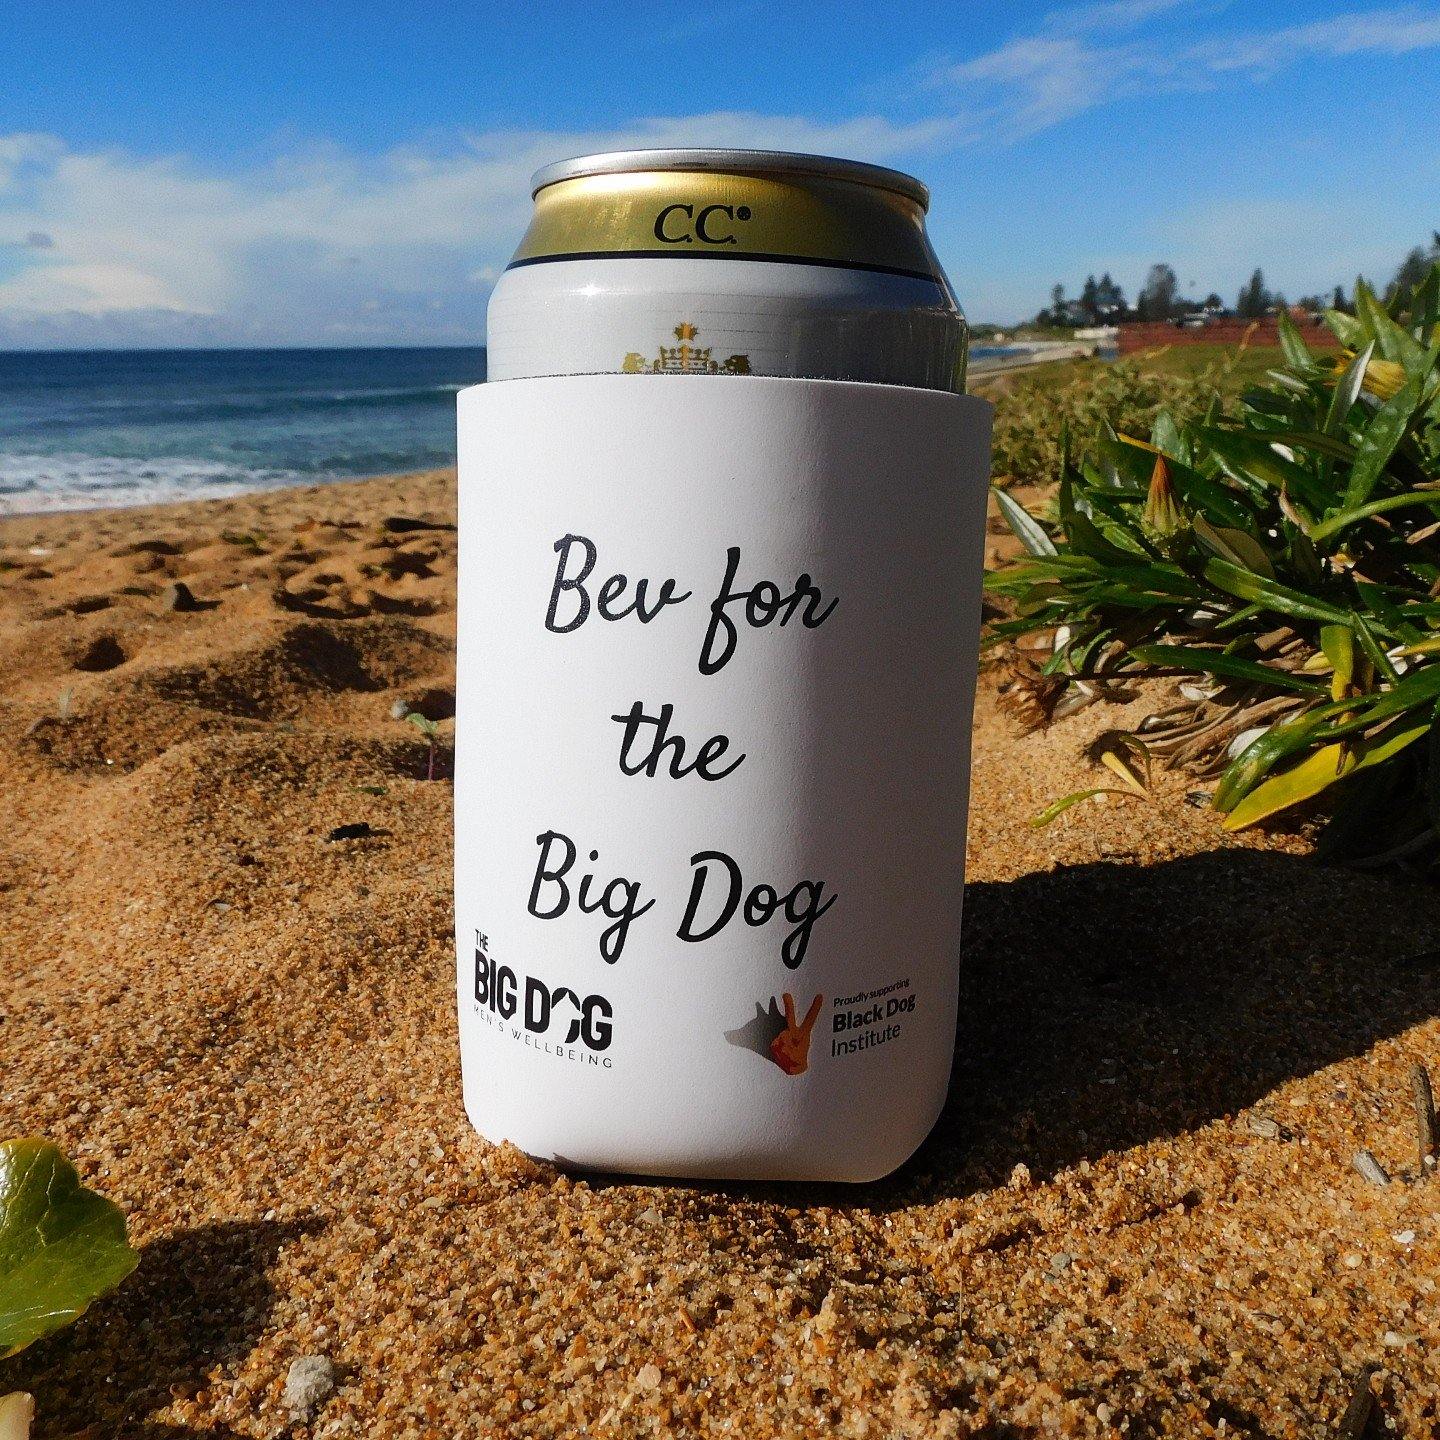 "Bev for the Big Dog" Stubby Holder - The Big Dog AU